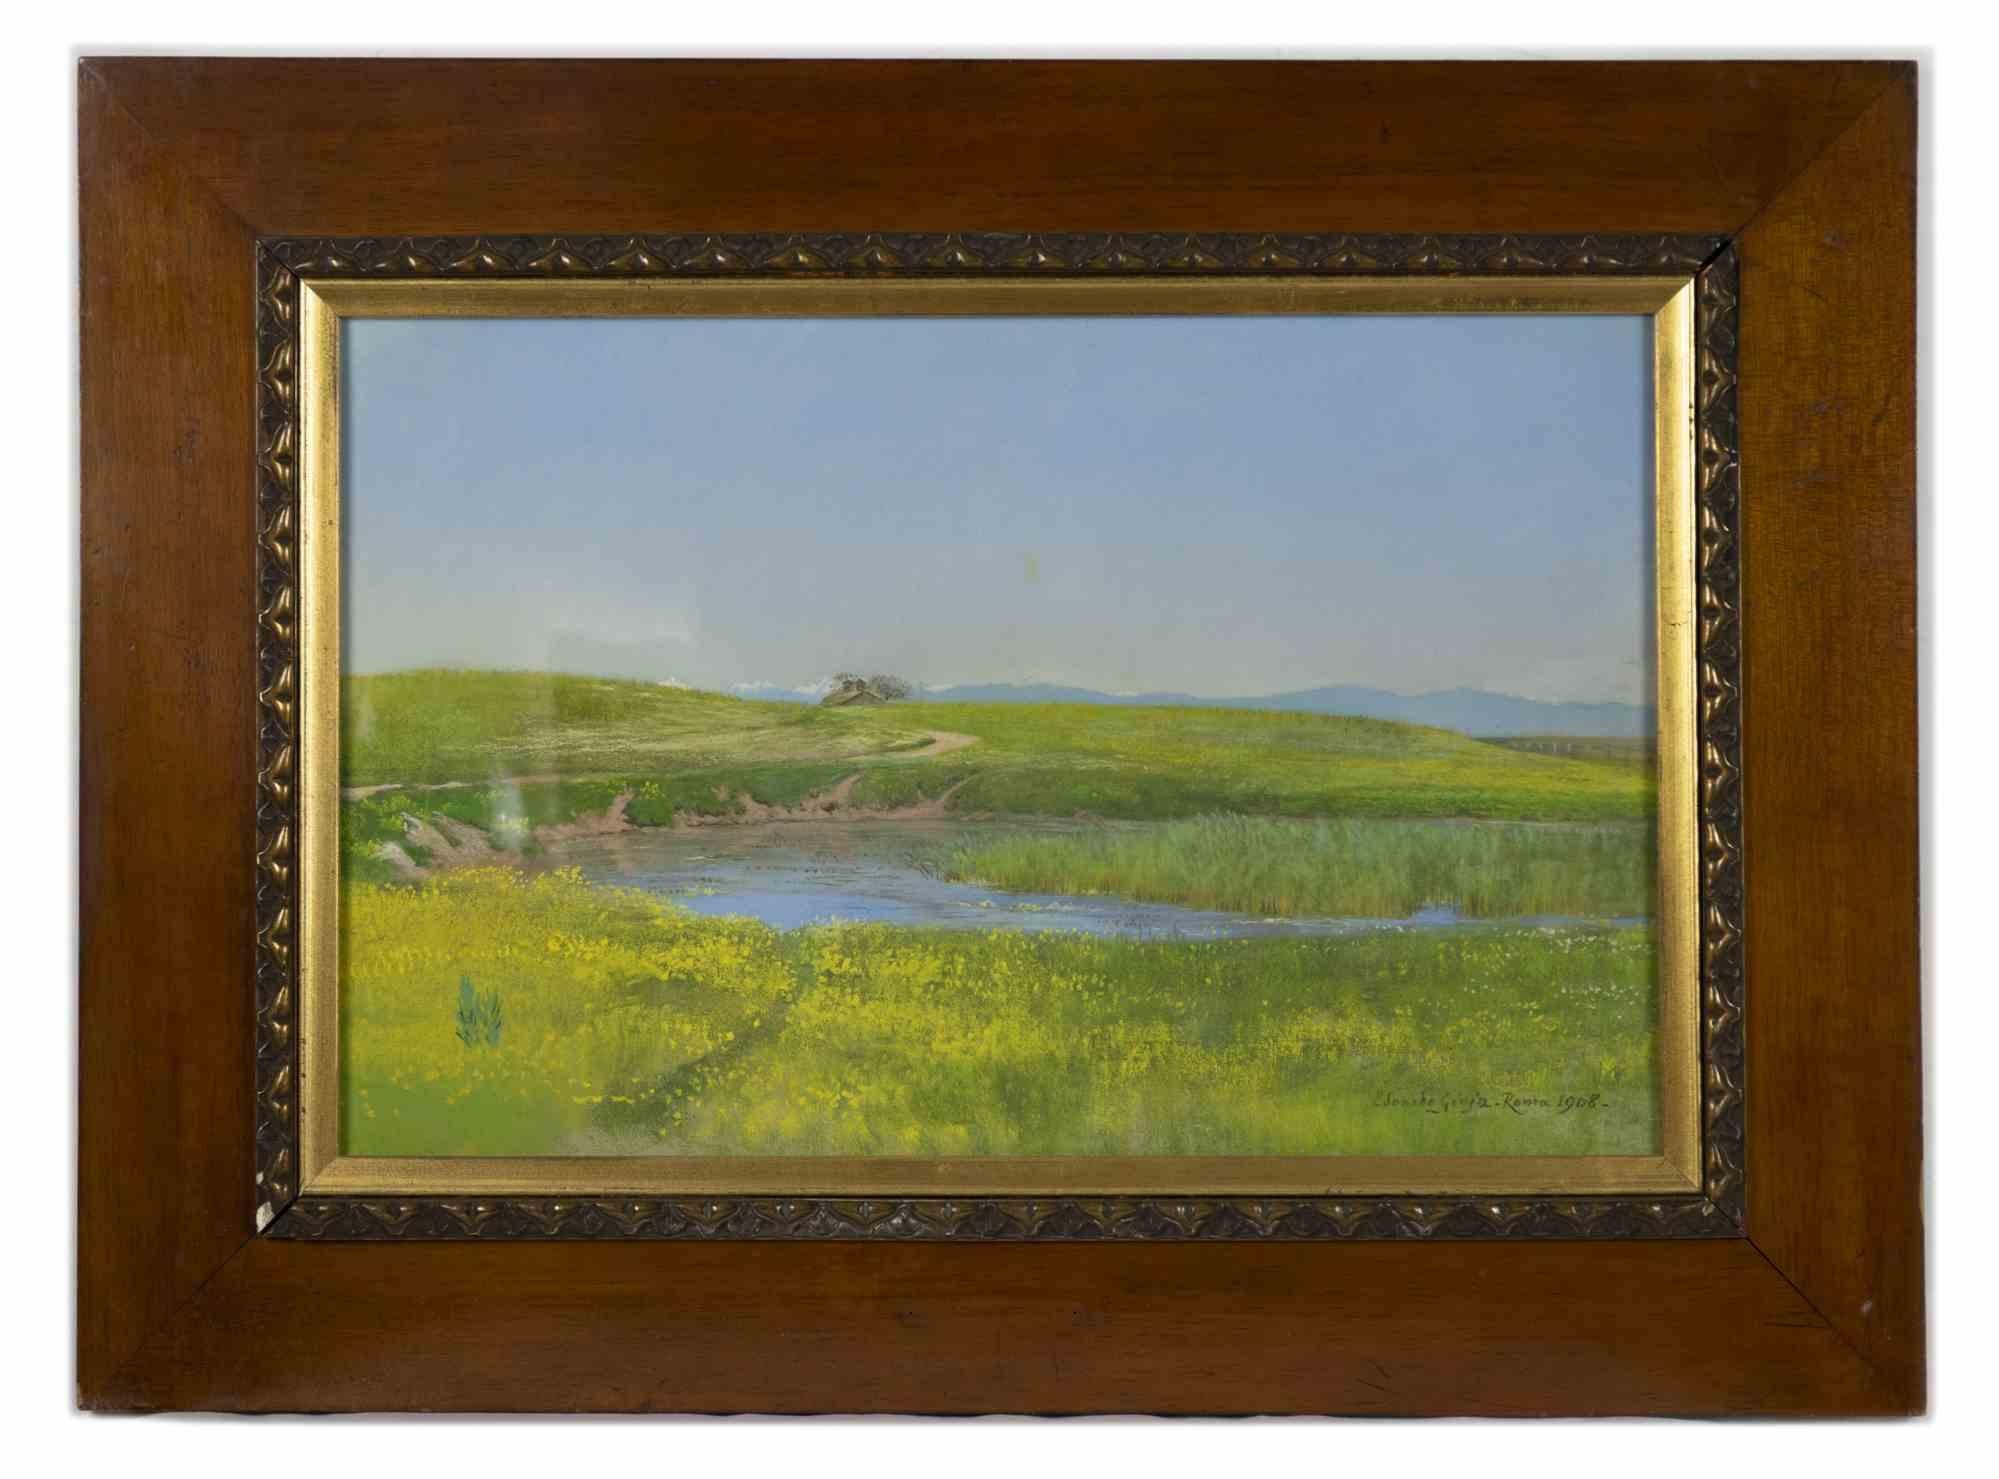 Roman Countryside - Mixed Media by E. Gioja - 1908 - Painting by Edoardo Gioja